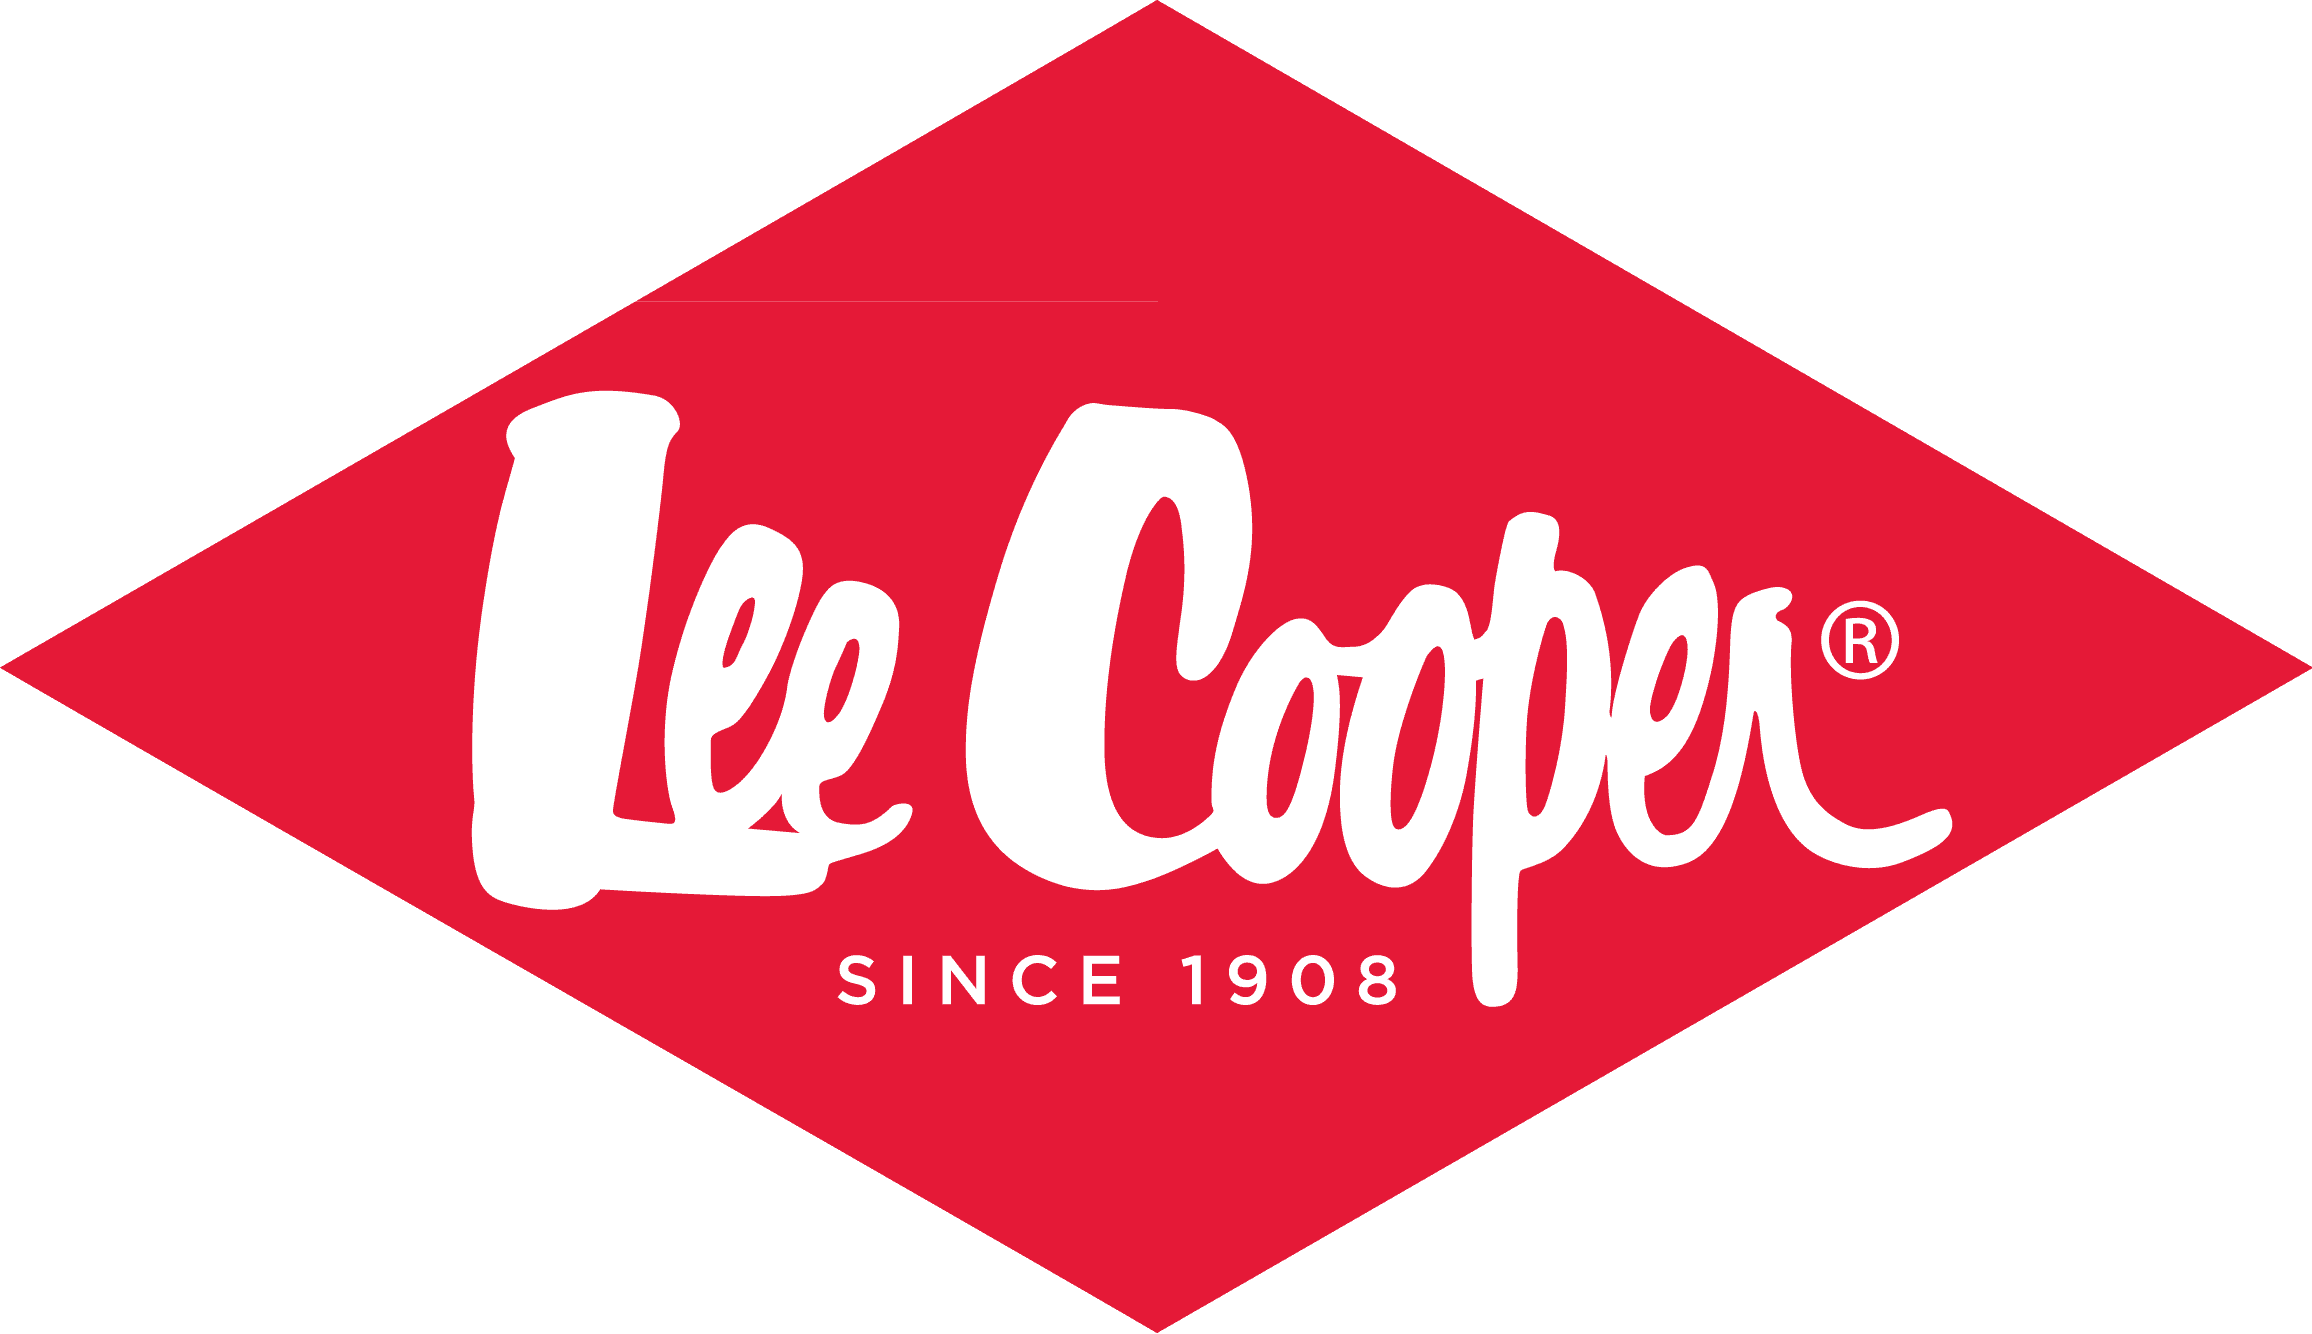 Lee Cooper logo výrobce značkové módy